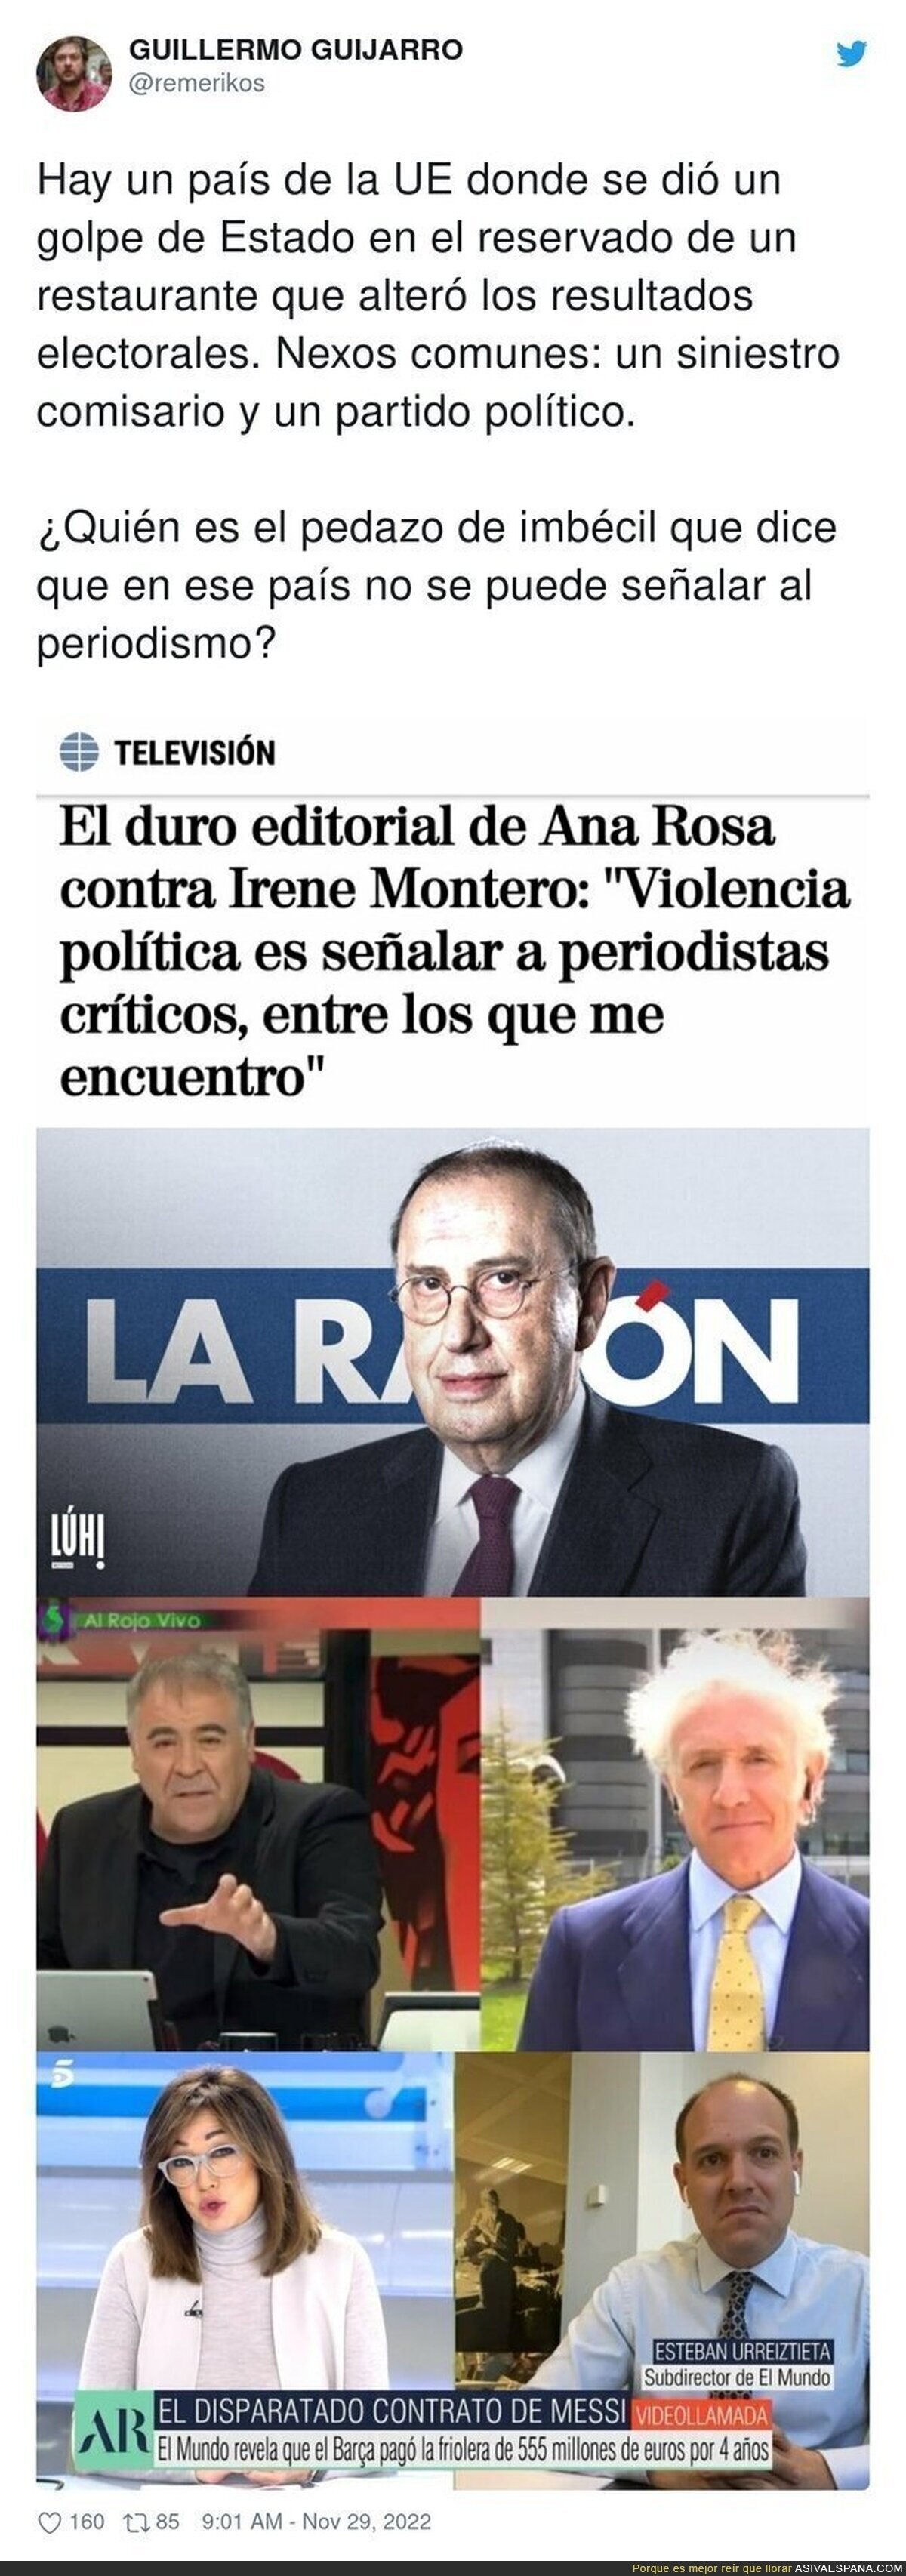 El periodista putrefacto en España